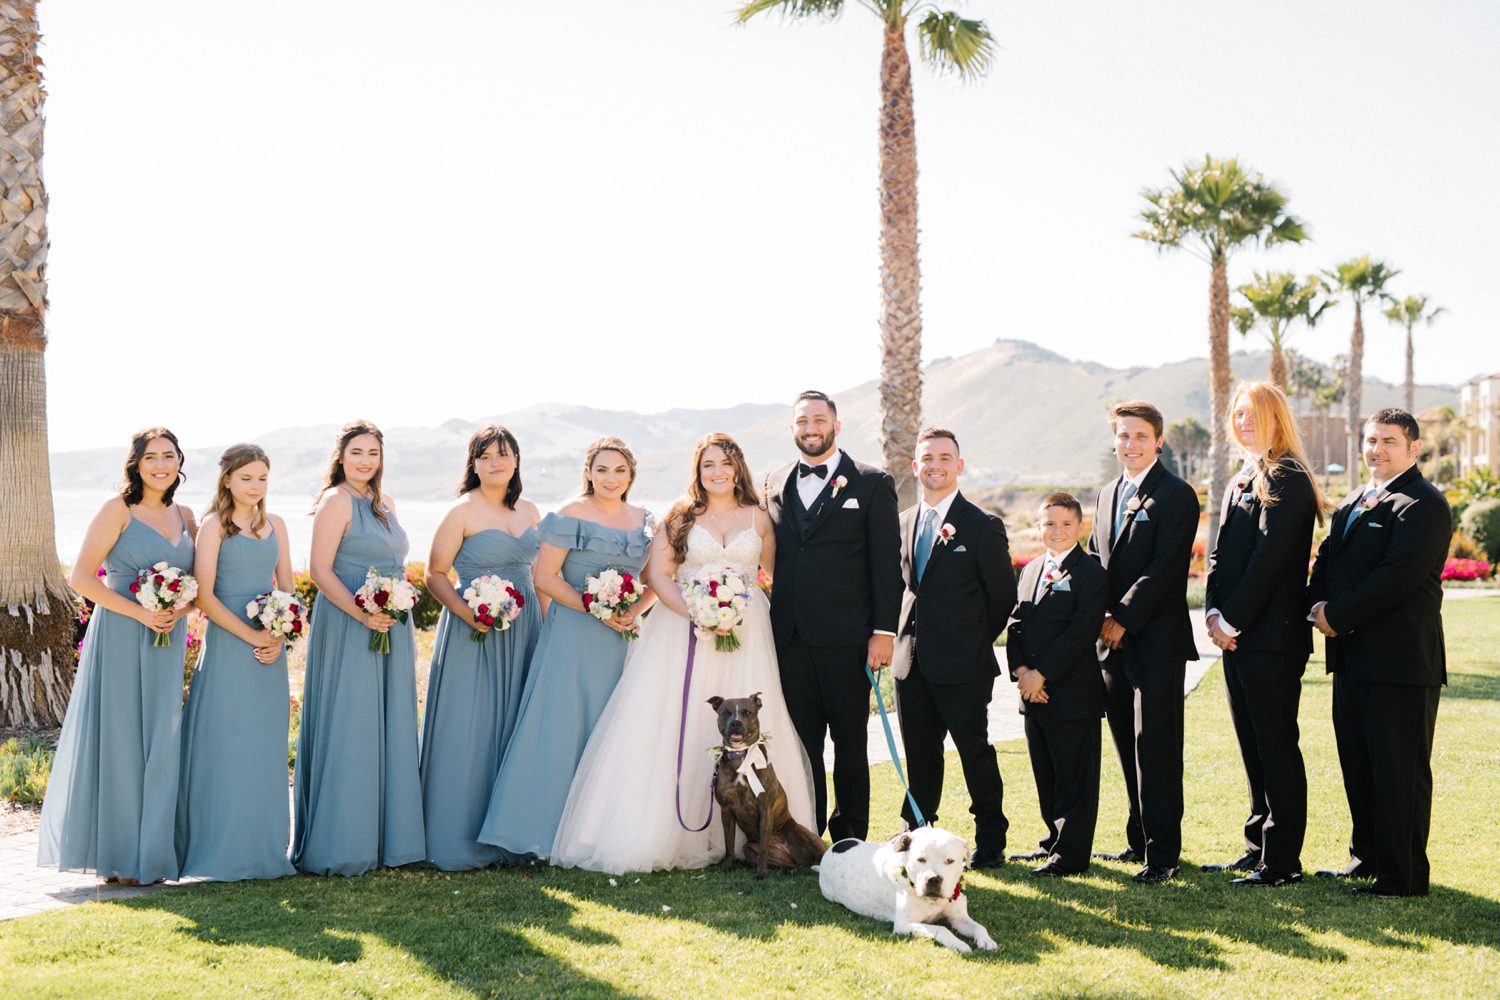 Wedding party at Cliffs Hotel Wedding by California's Central Coast Wedding Photographer Austyn Elizabeth Photography